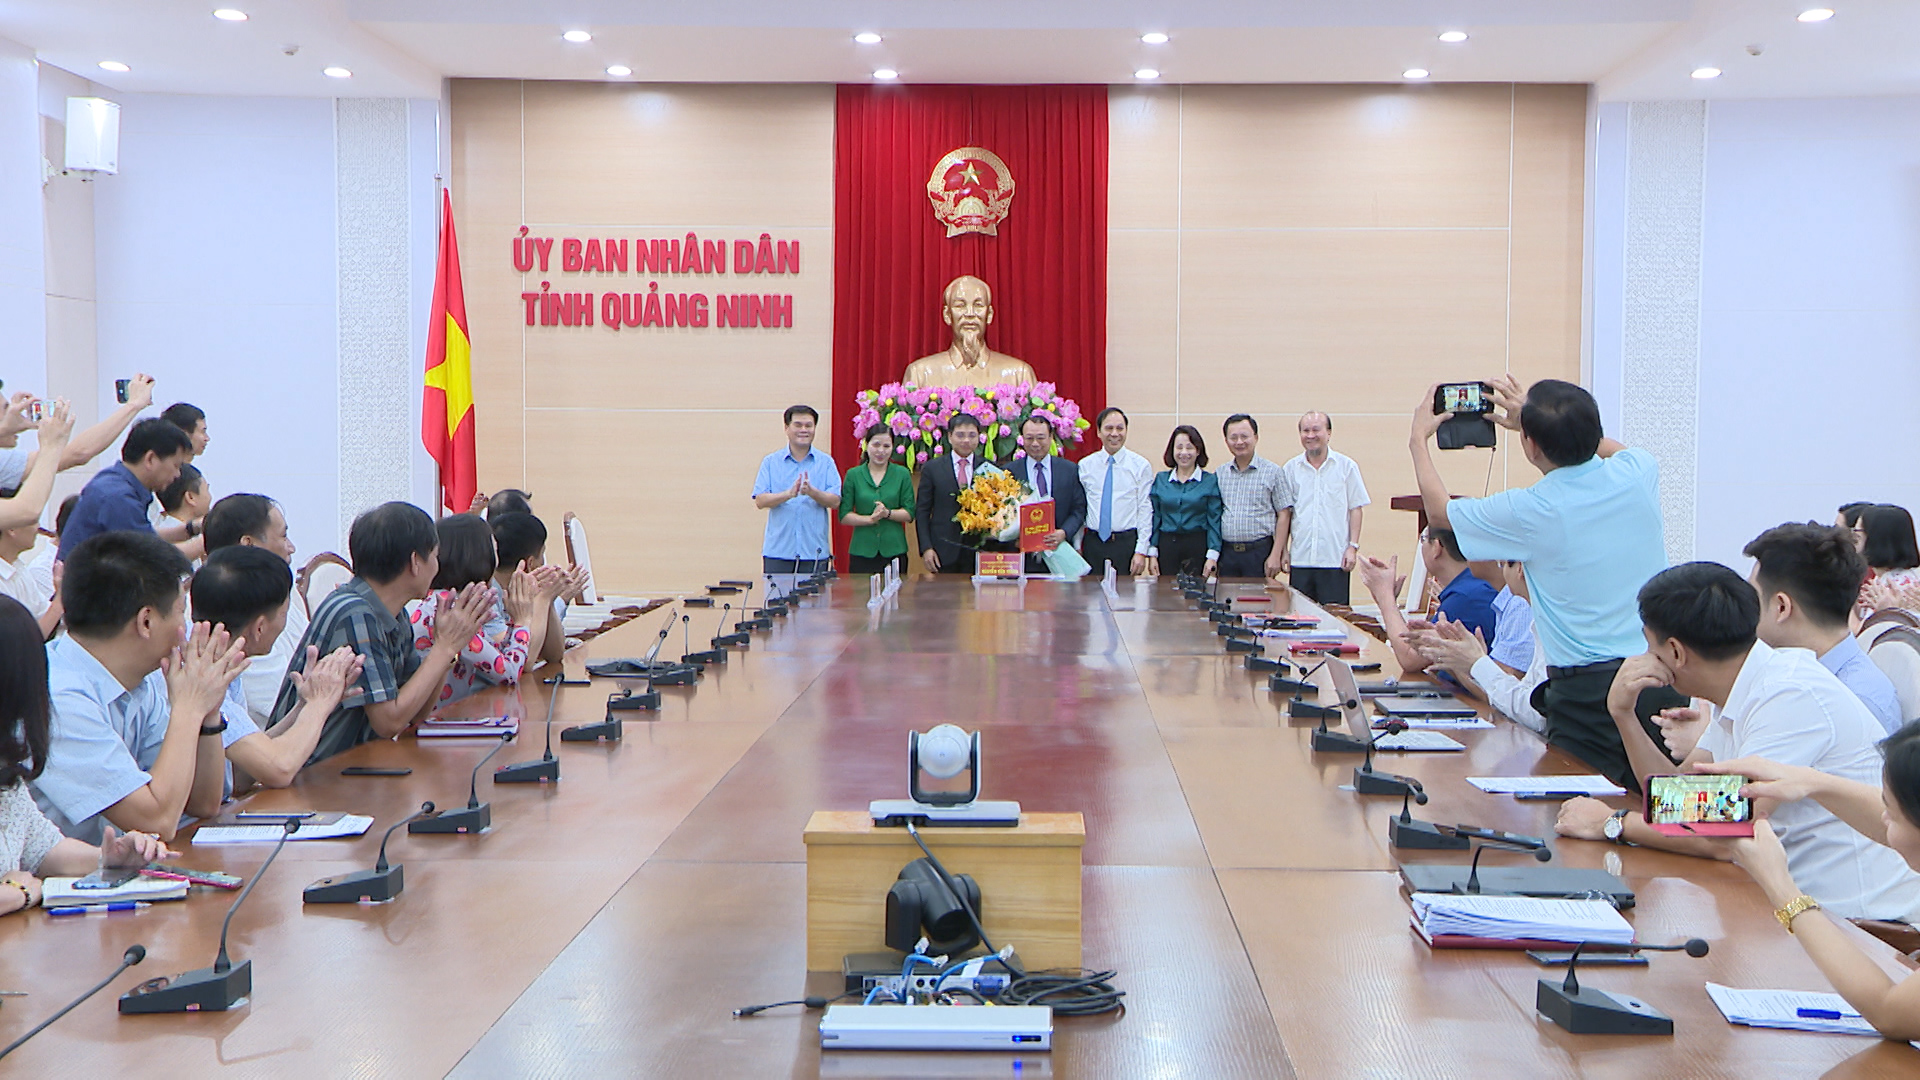 Đồng chí Nguyễn Văn Thắng, Chủ tịch UBND tỉnh và các đồng chí lãnh đạo tỉnh trao quyết định, tặng hoa cho đồng chí Lê Như Thiều